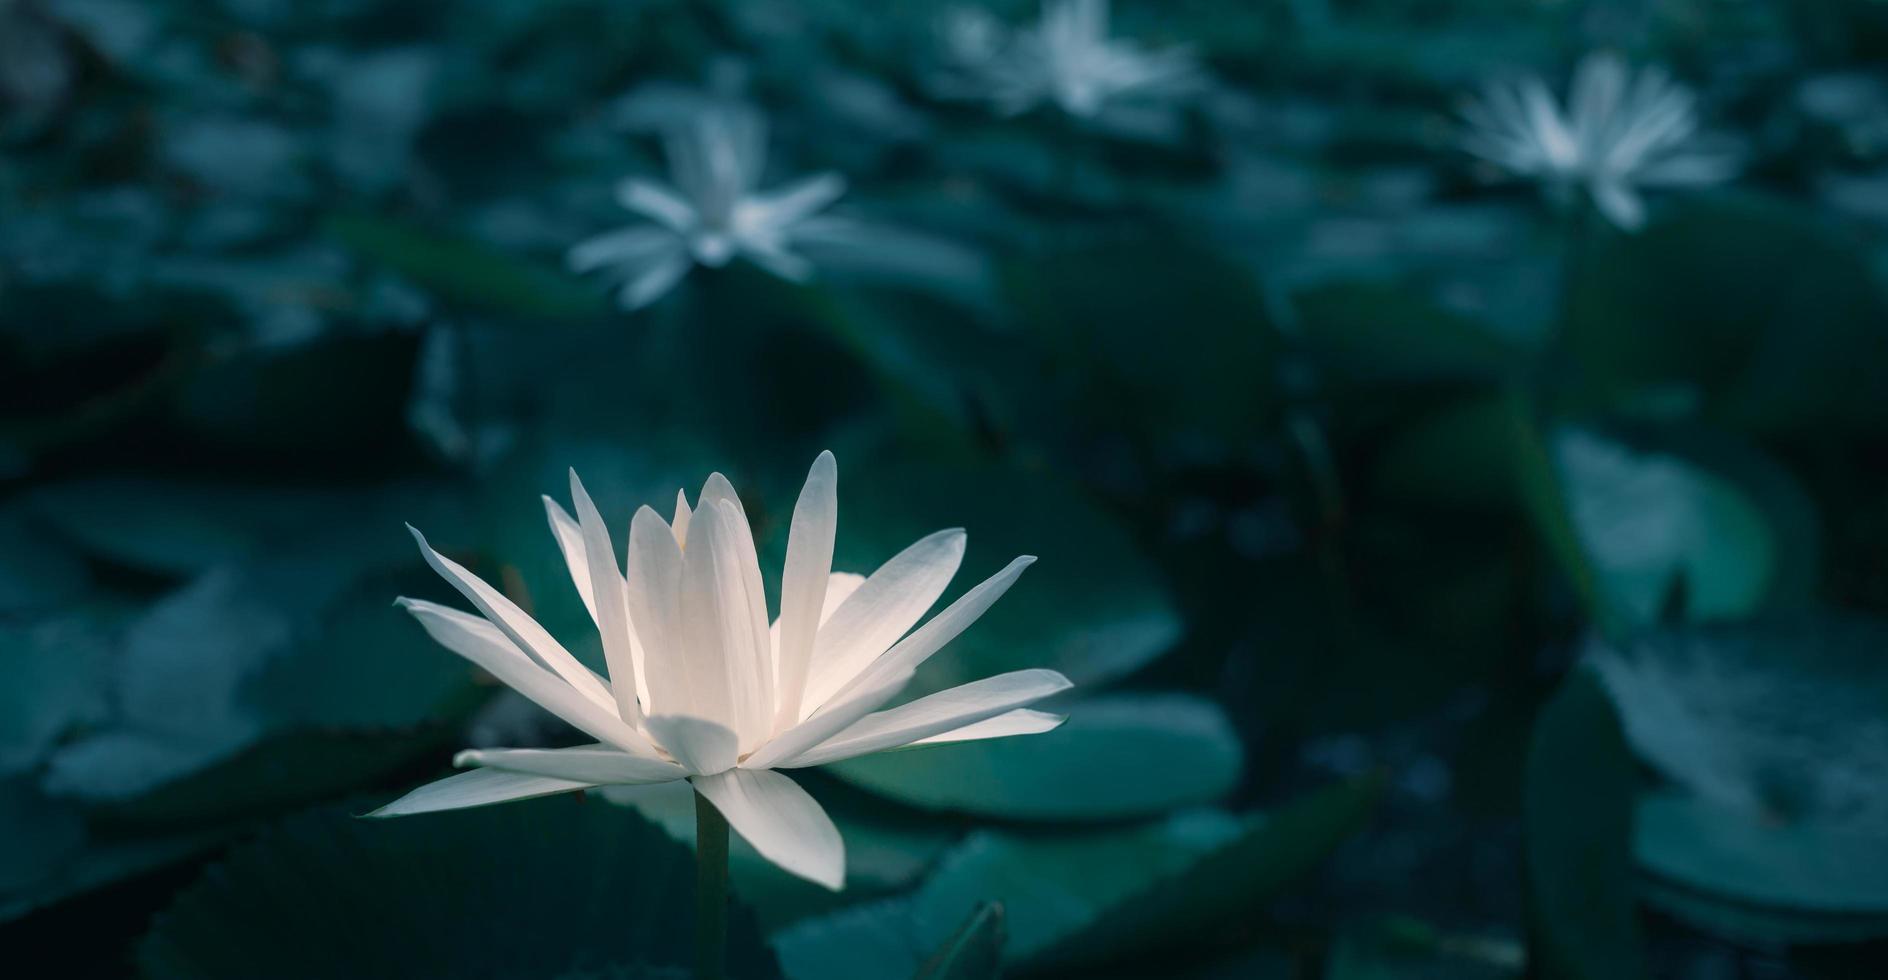 detailopname mooi wit lotus bloem in vijver.wit lotus bloem achtergrond lelie drijvend Aan de water foto